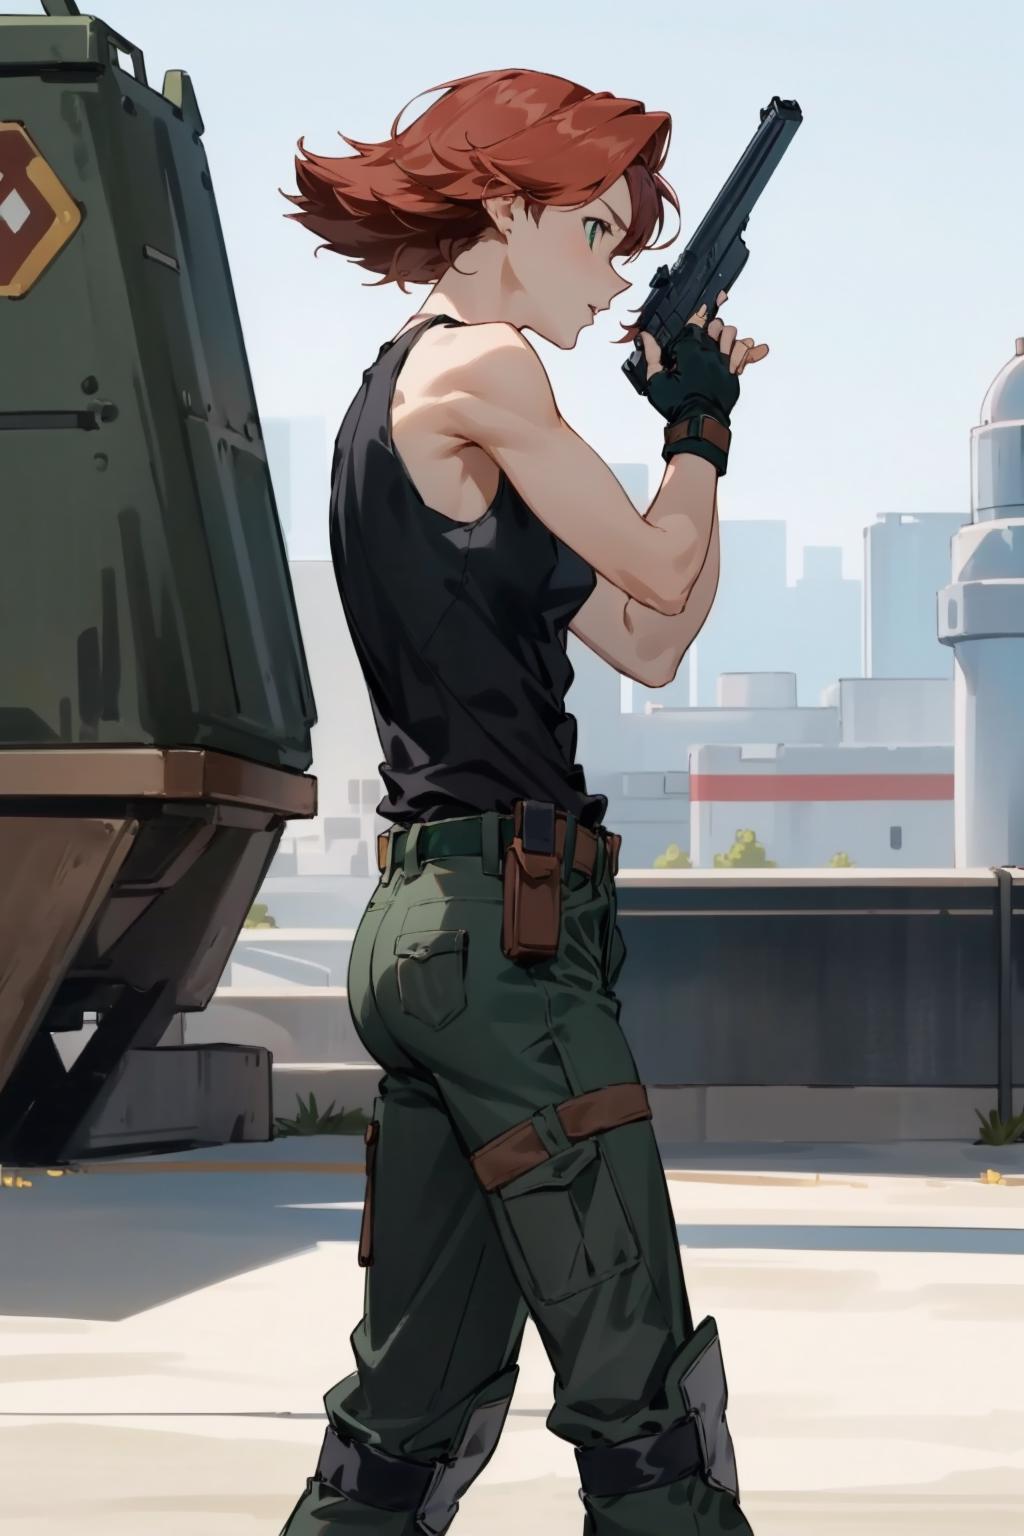 Meryl Silverburgh (Metal Gear Solid) LoRA image by novowels